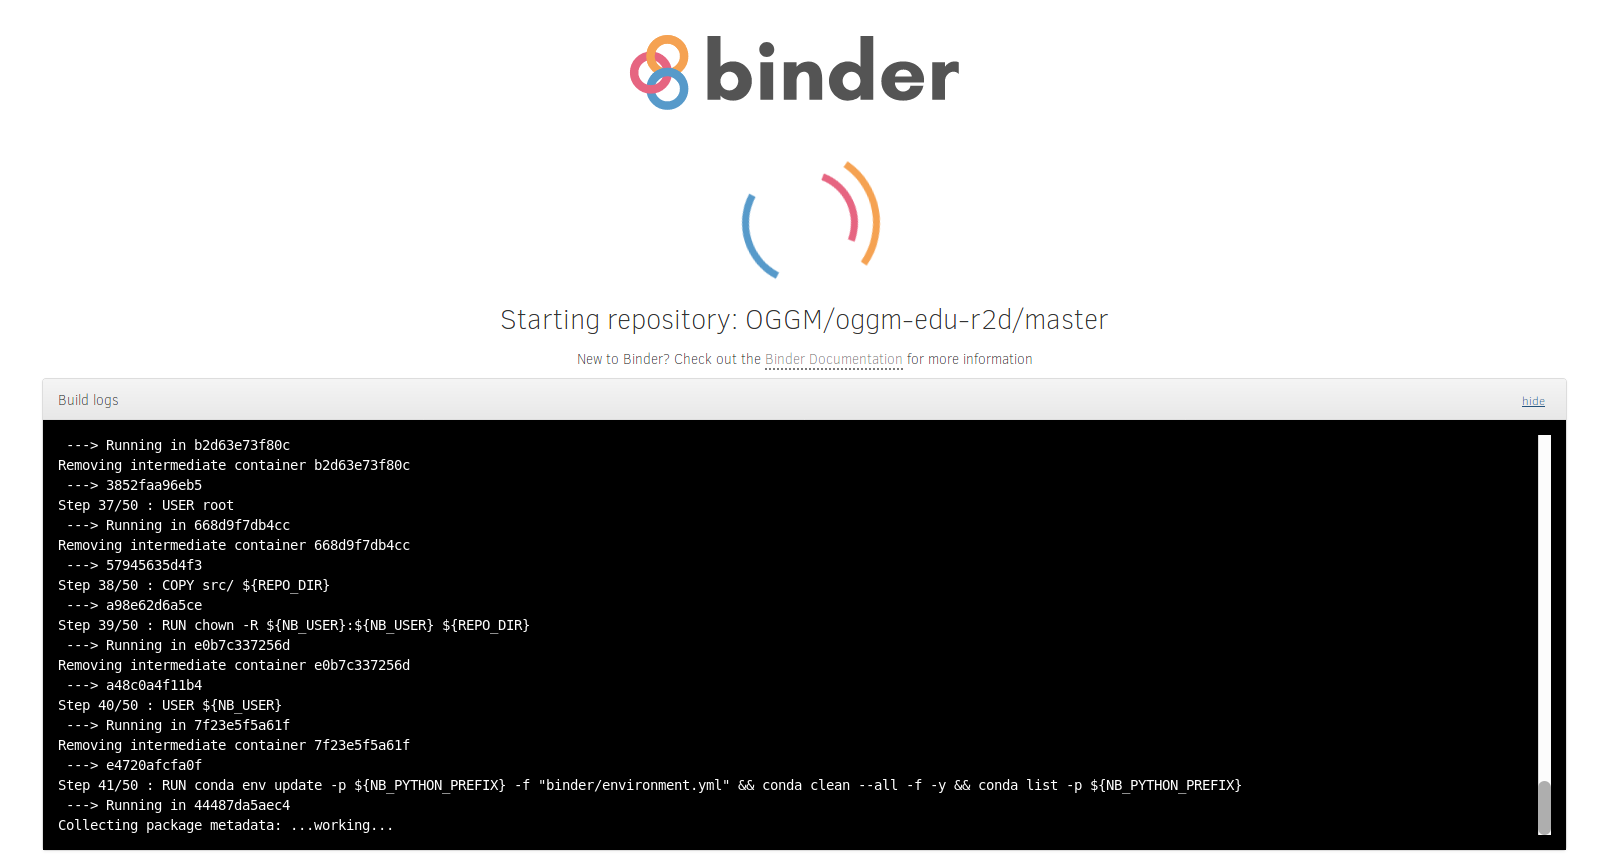 _images/docs_binder_launch_build.png